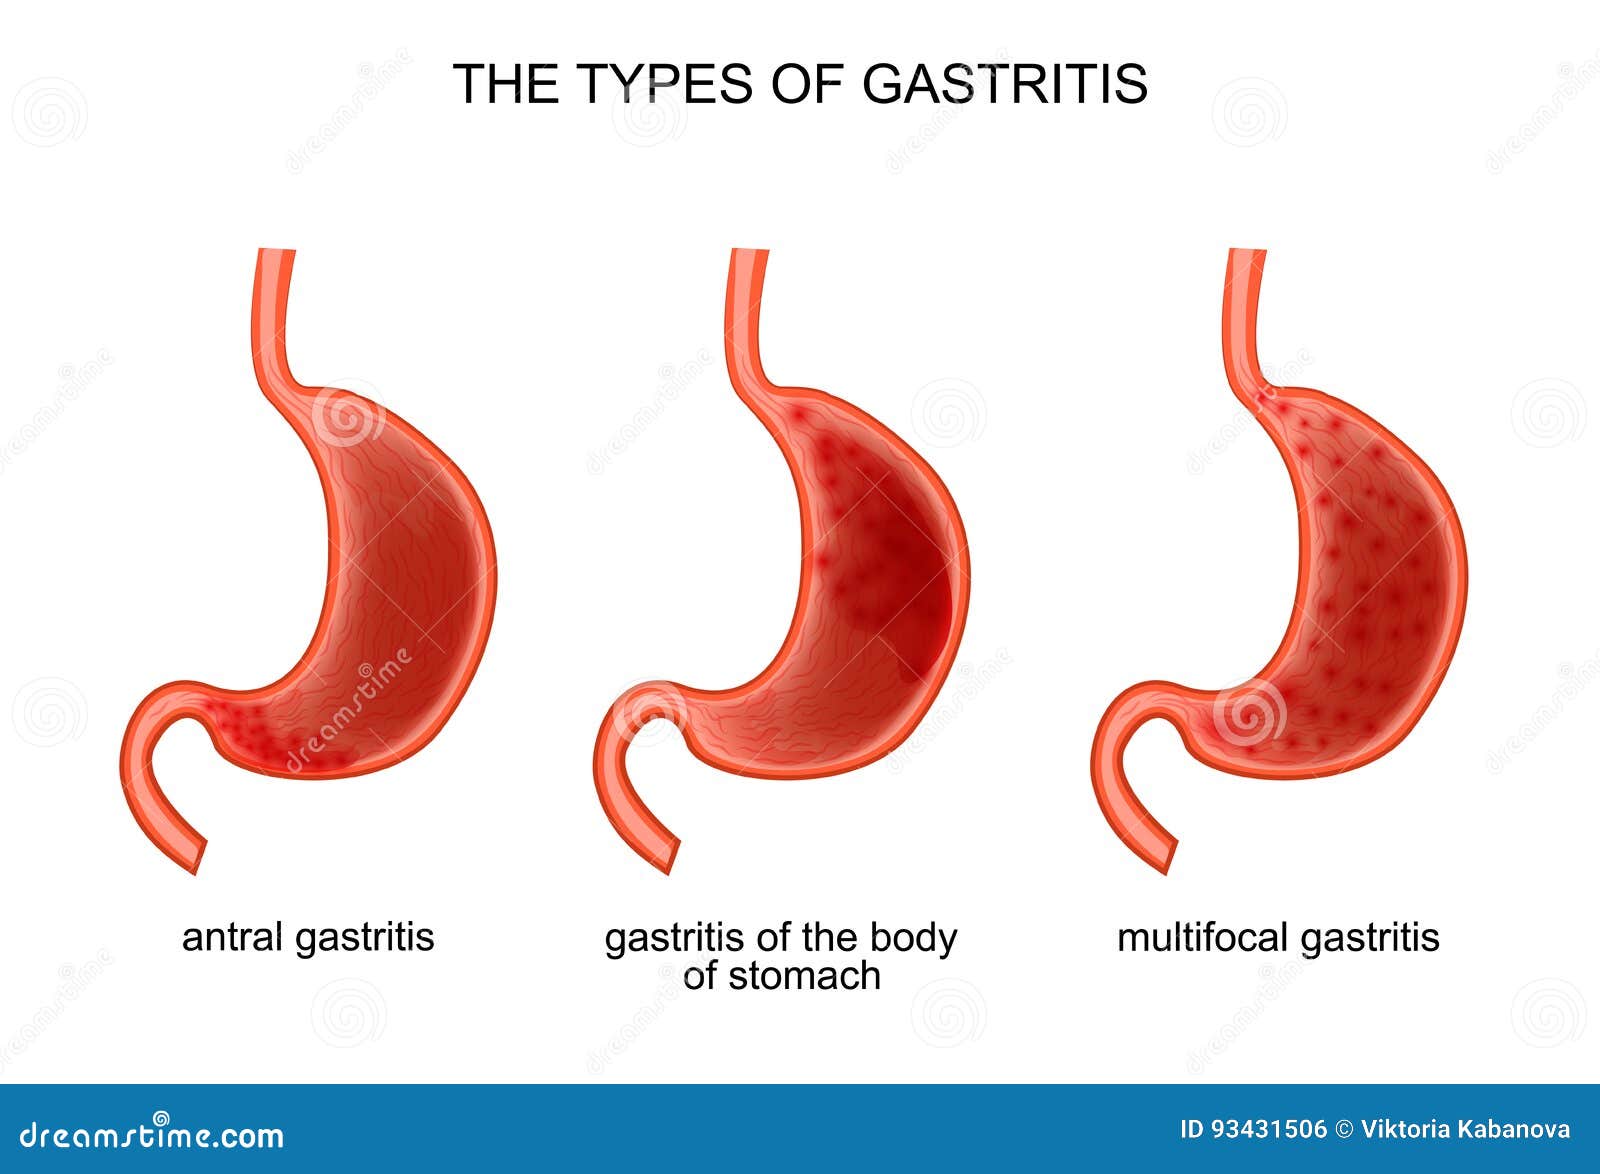 Alimentación en gastritis